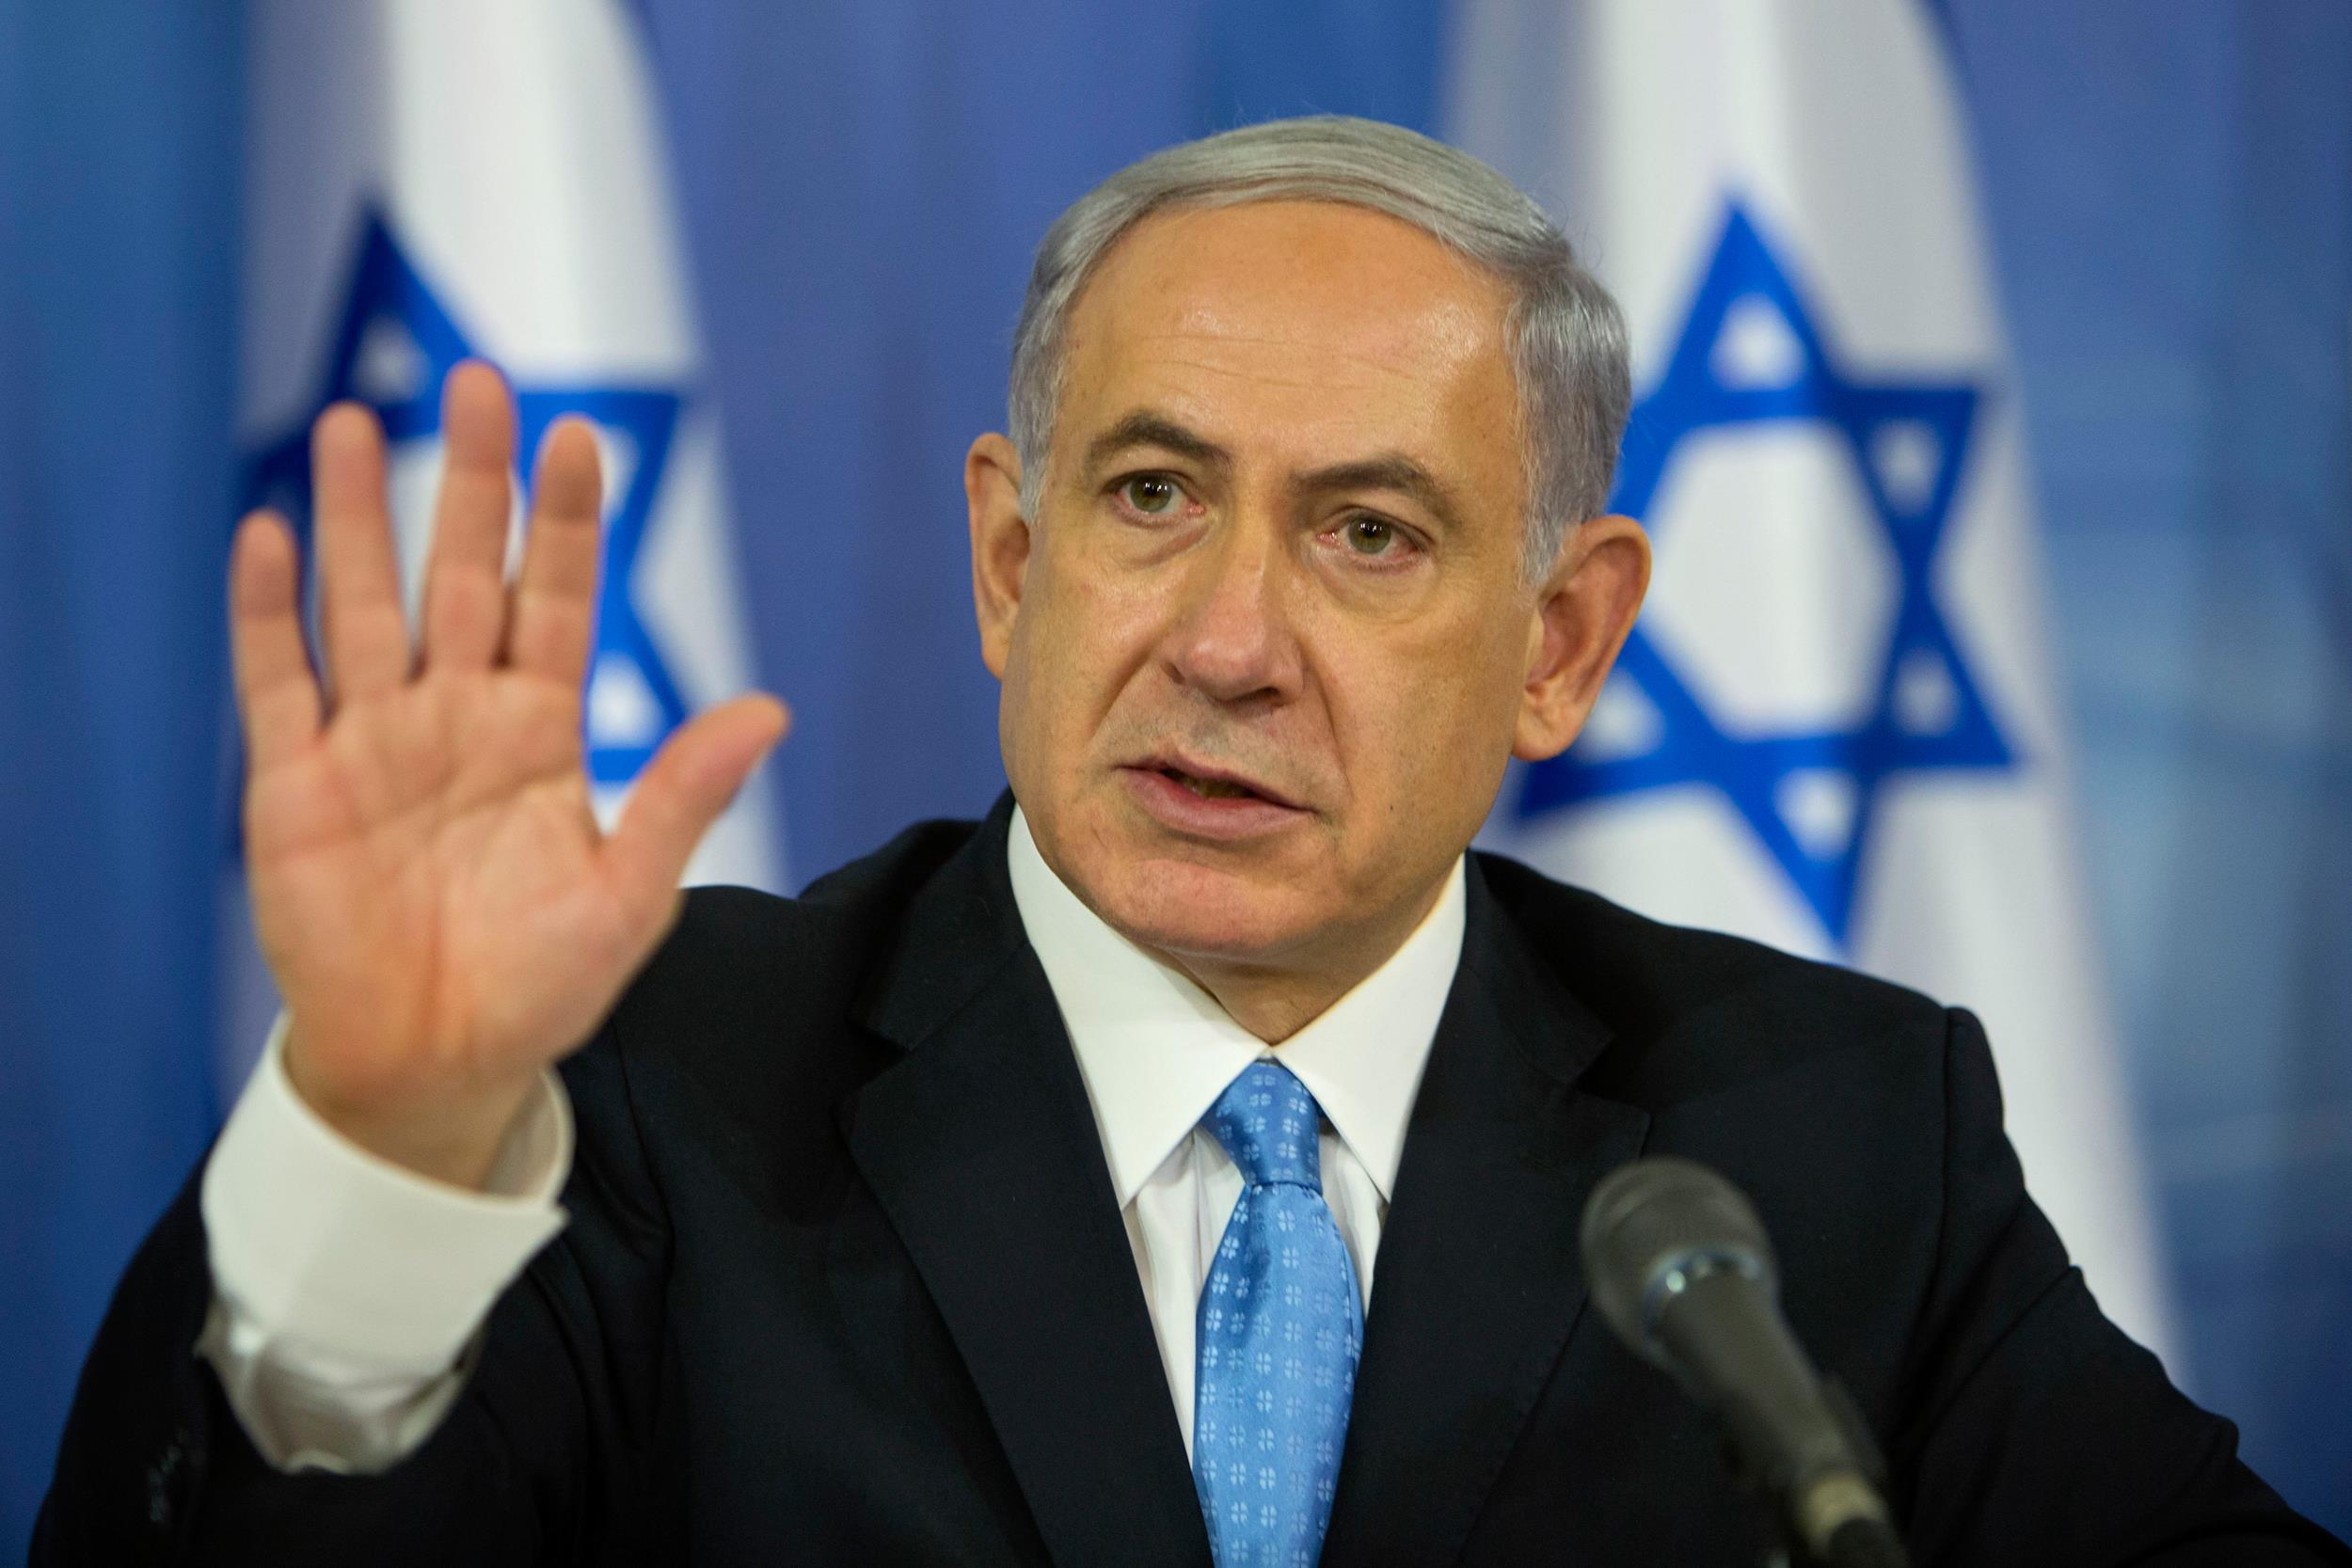 نتنياهو يشترط الاعتراف بيهودية إسرائيل للتفاوض حول اتفاق سلام